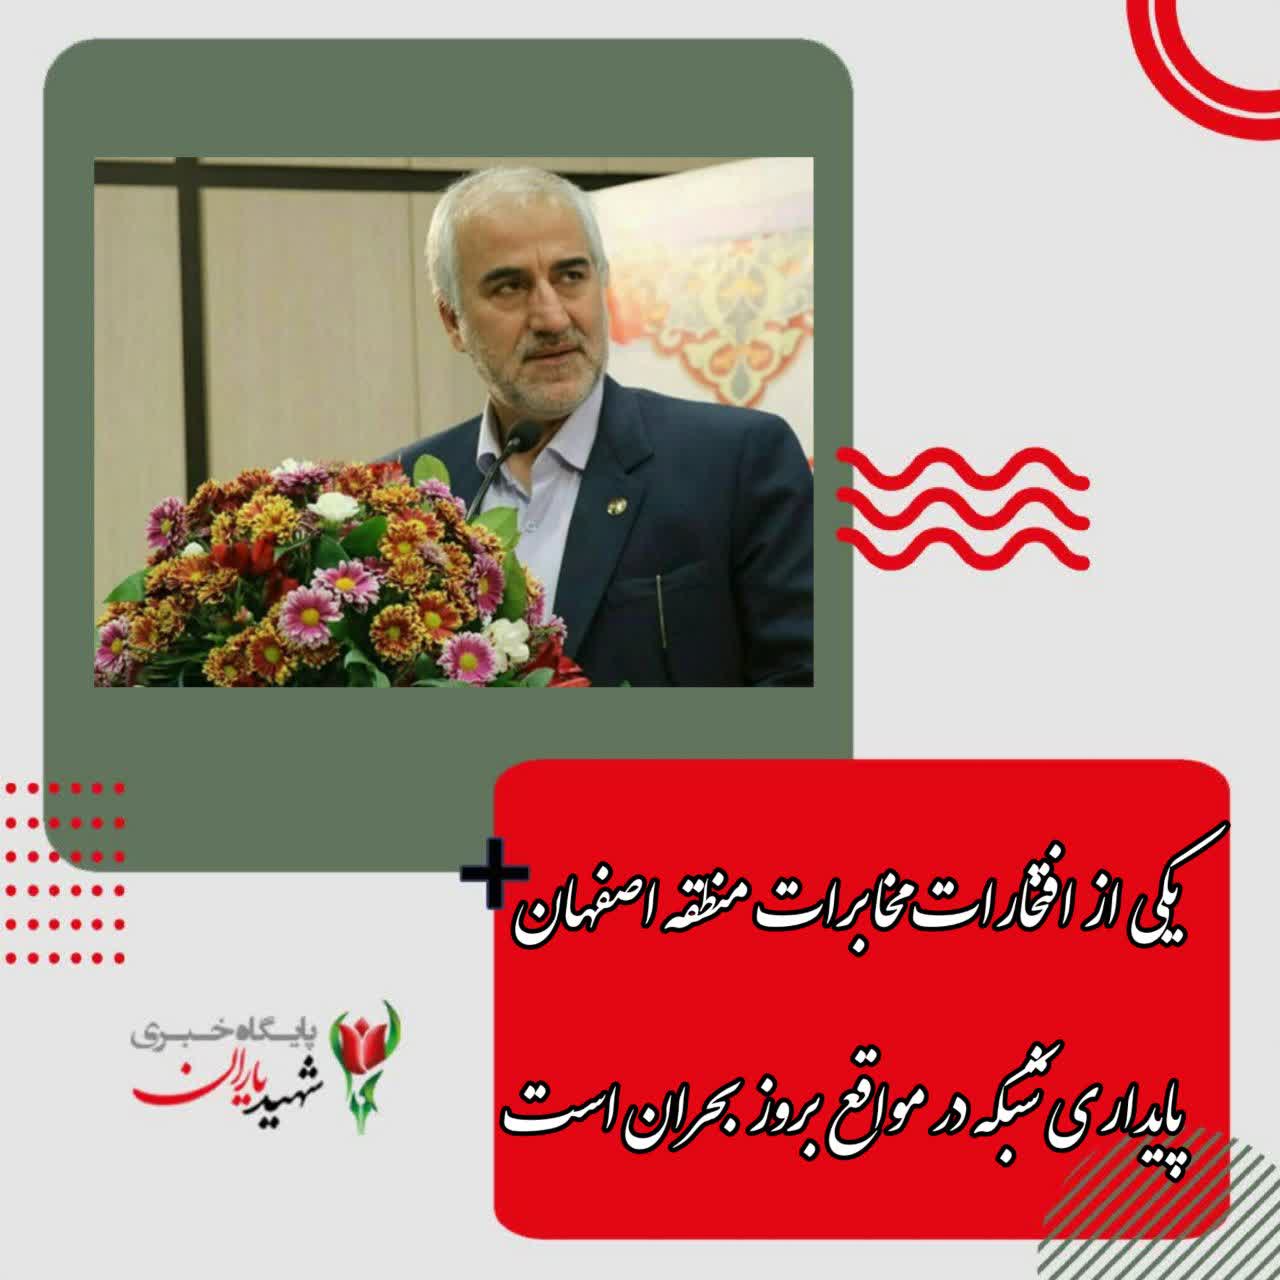 قربانی: یکی از افتخارات مخابرات منطقه اصفهان پایداری شبکه در مواقع بروز بحران است